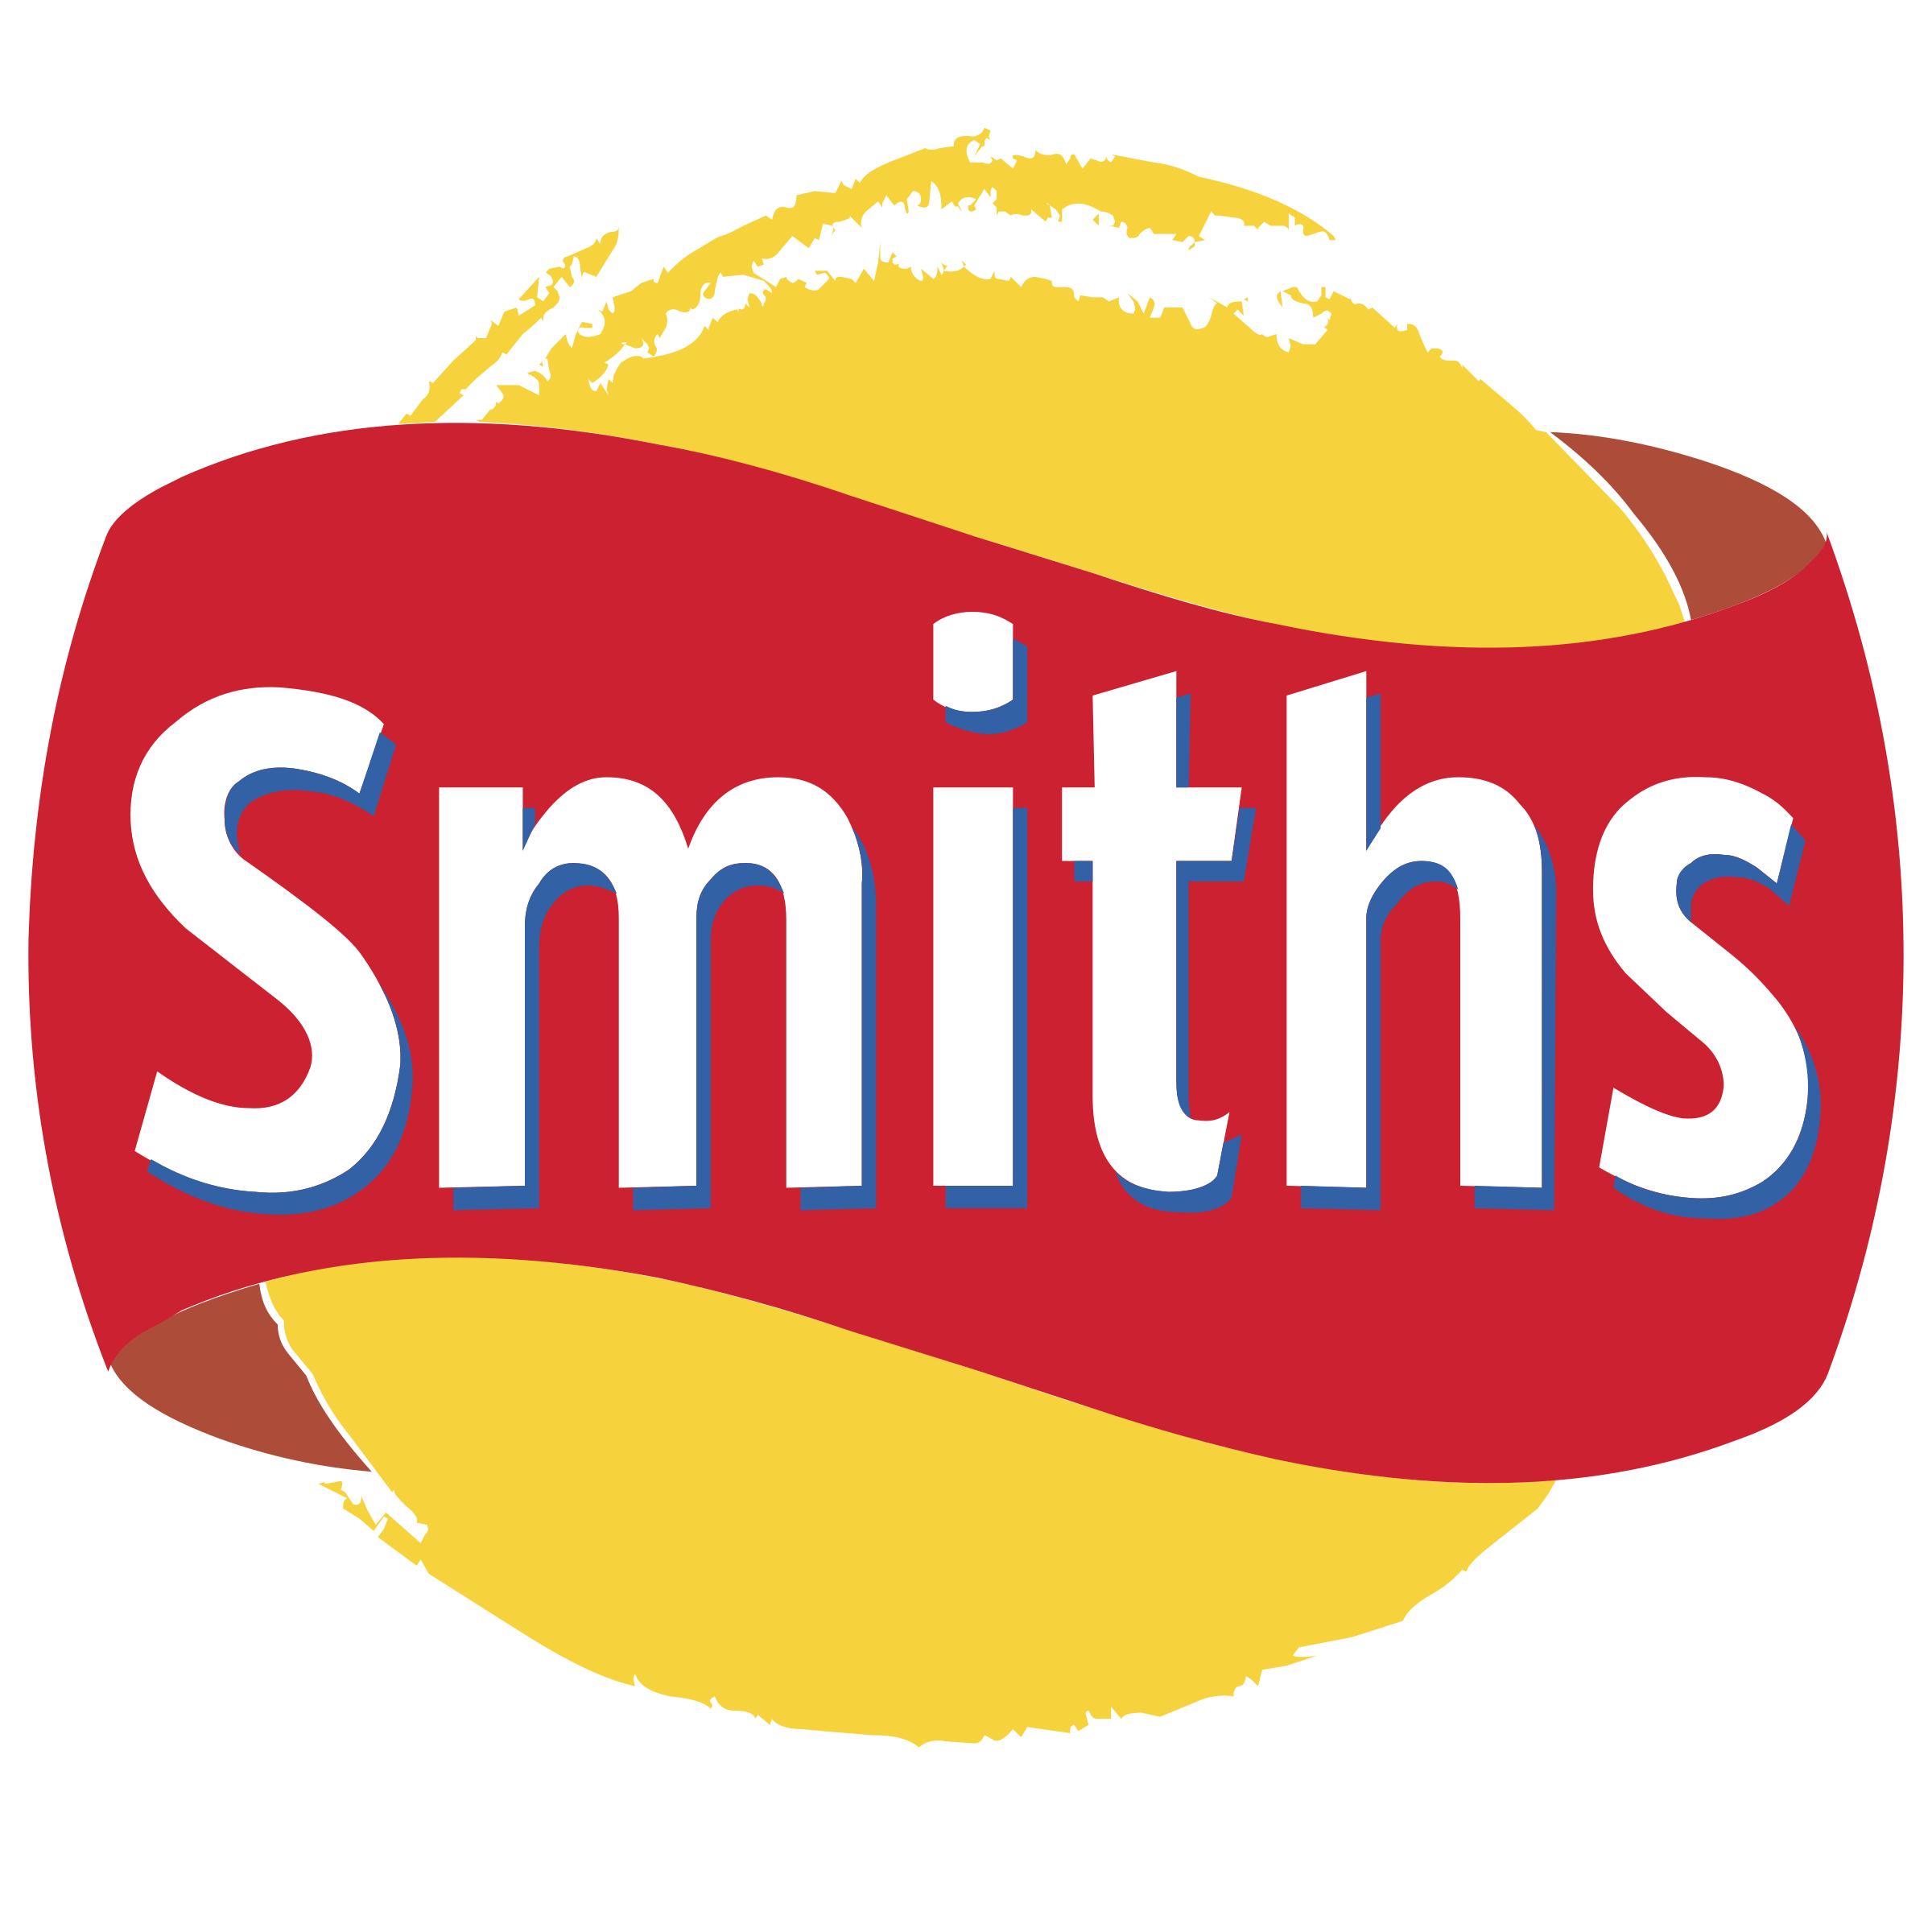 Chips Logo - Smiths Chips Logo PNG Transparent & SVG Vector